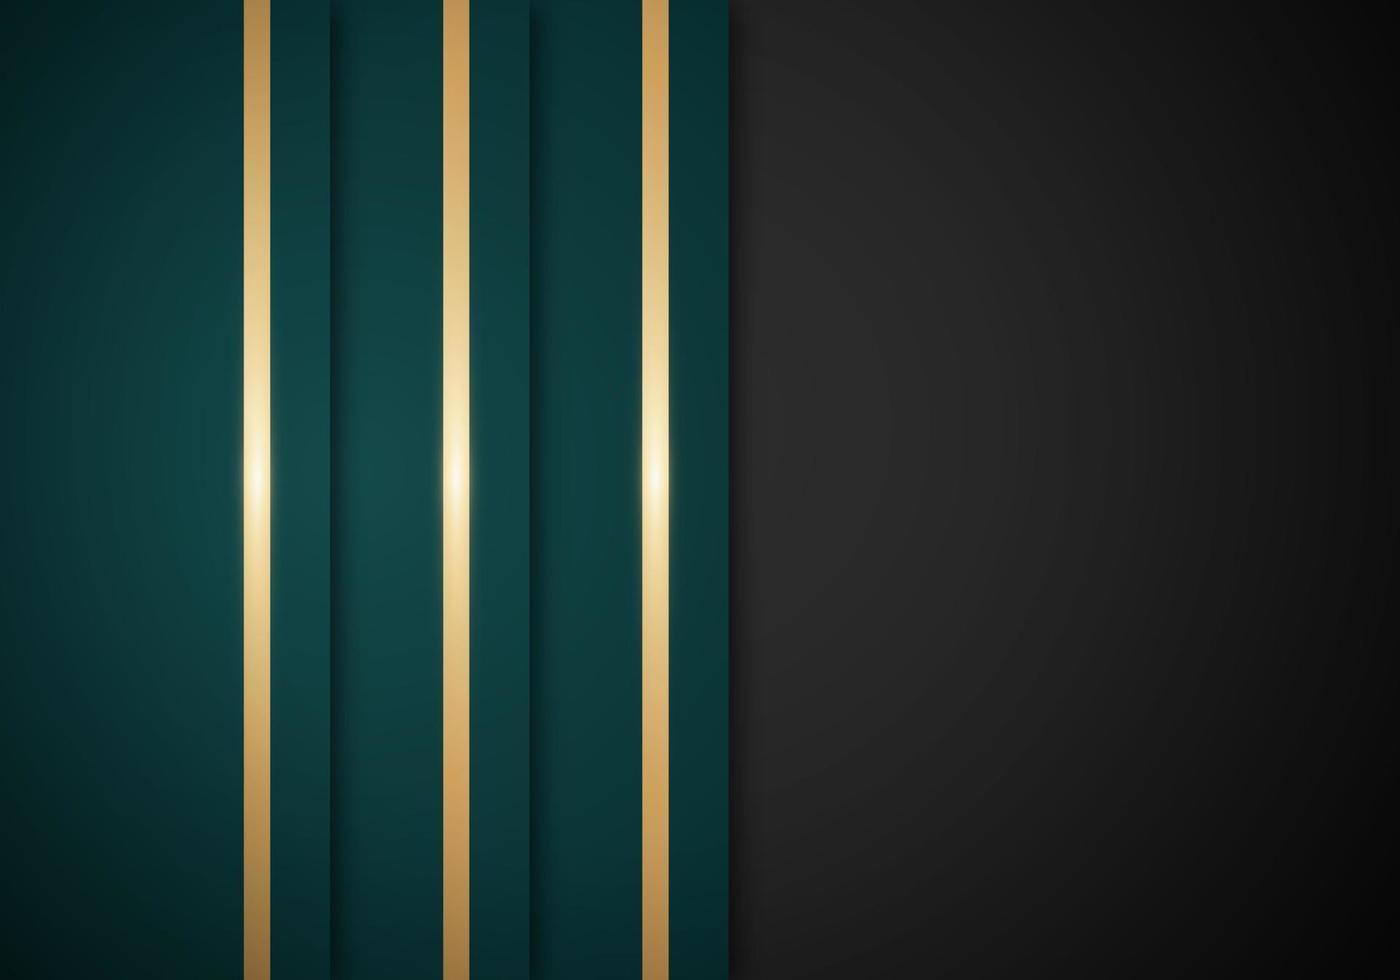 abstrakt bakgrund grön Ränder överlappande lager skinande gyllene rader på svart bakgrund med kopia Plats för text eller meddelande vektor